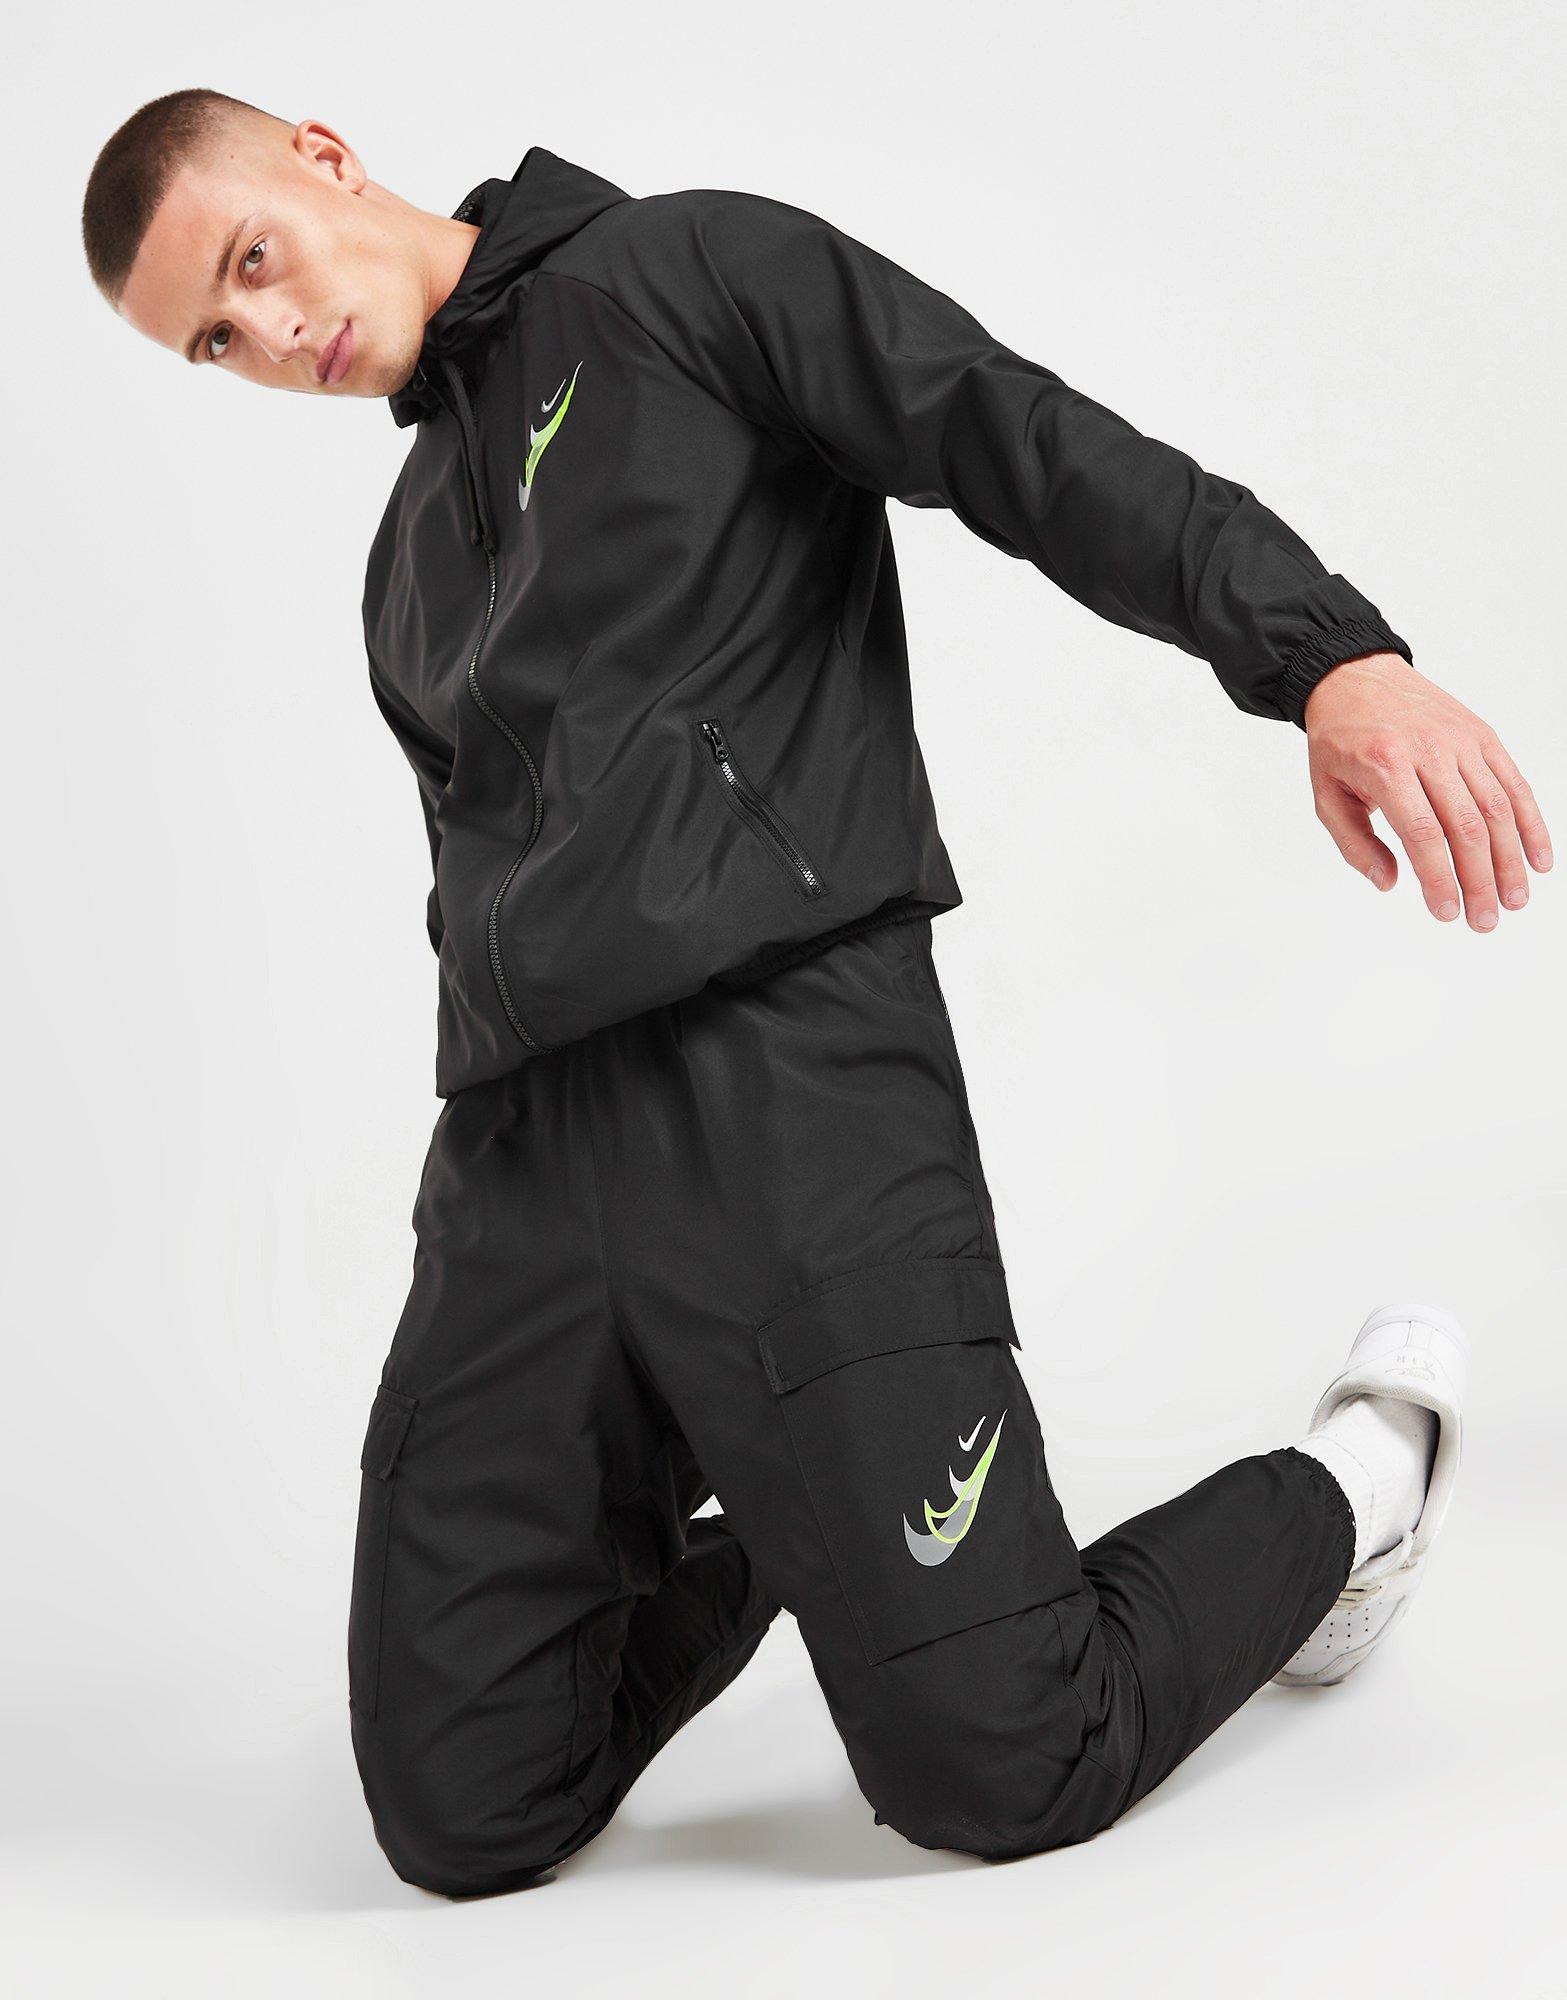 Les meilleurs pantalons de survêtement noirs Nike pour homme. Nike FR